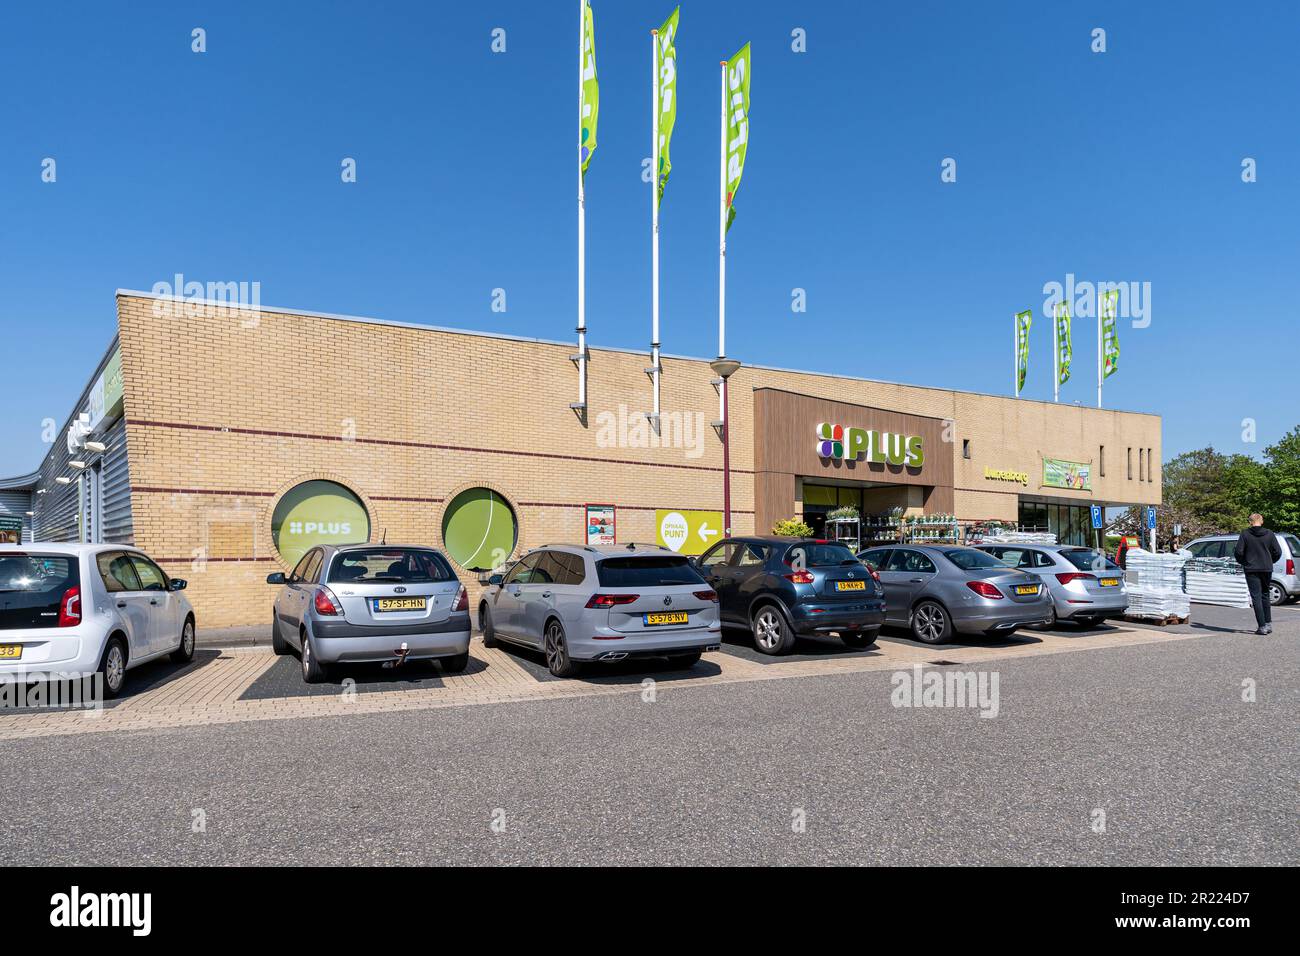 Plus supermarket in Harlingen, Netherlands Stock Photo